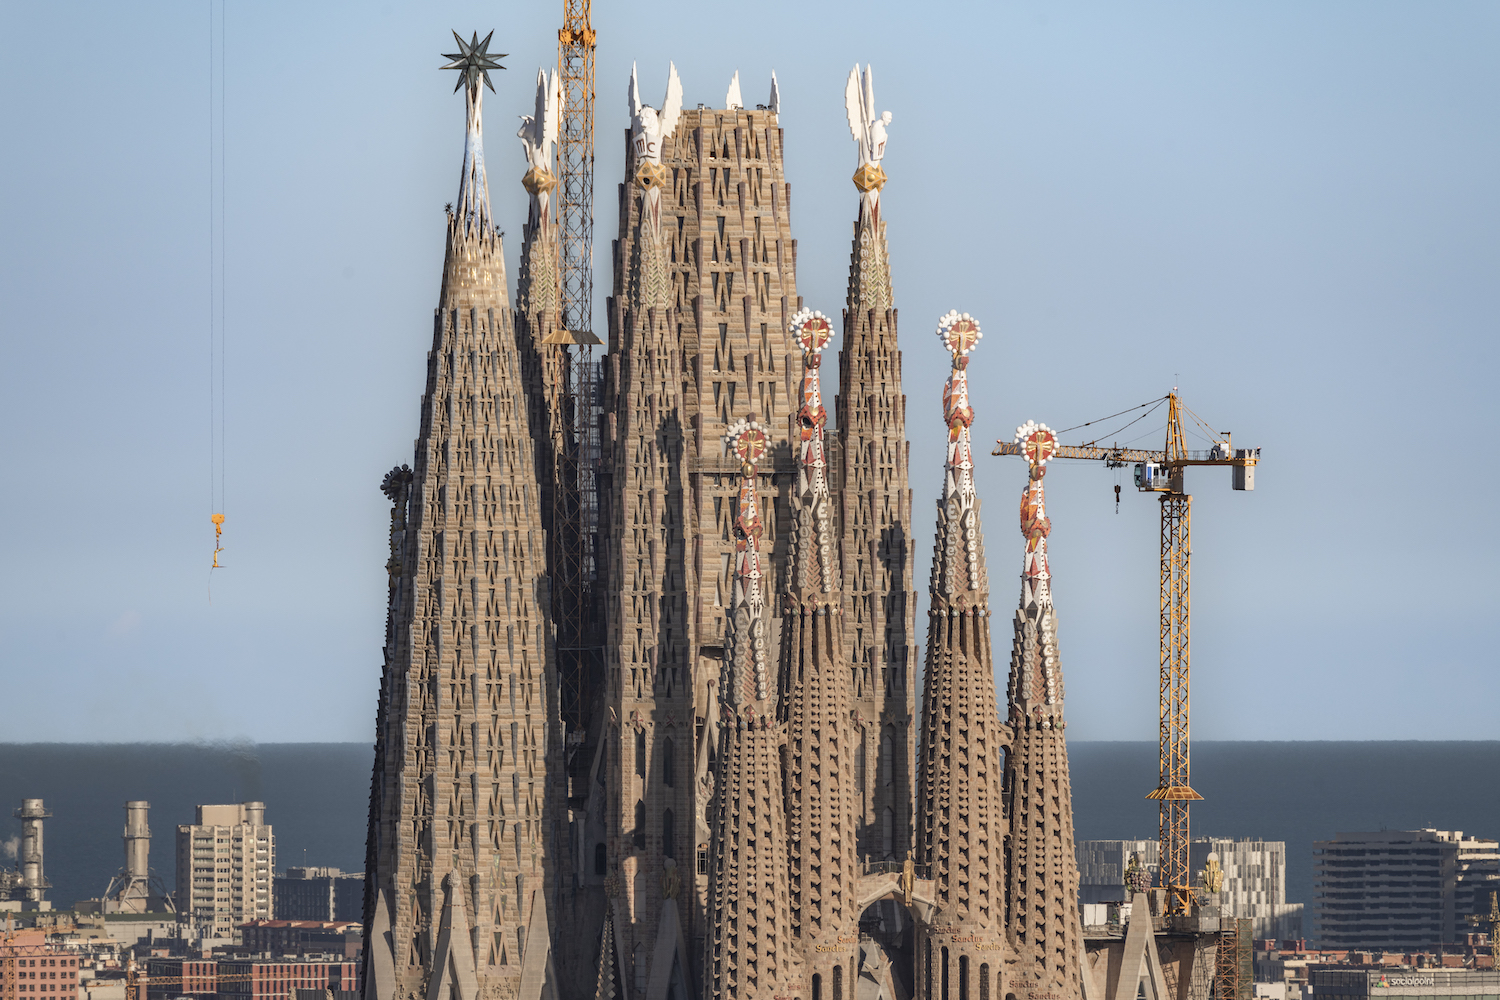 Towers of the Sagrada Familia